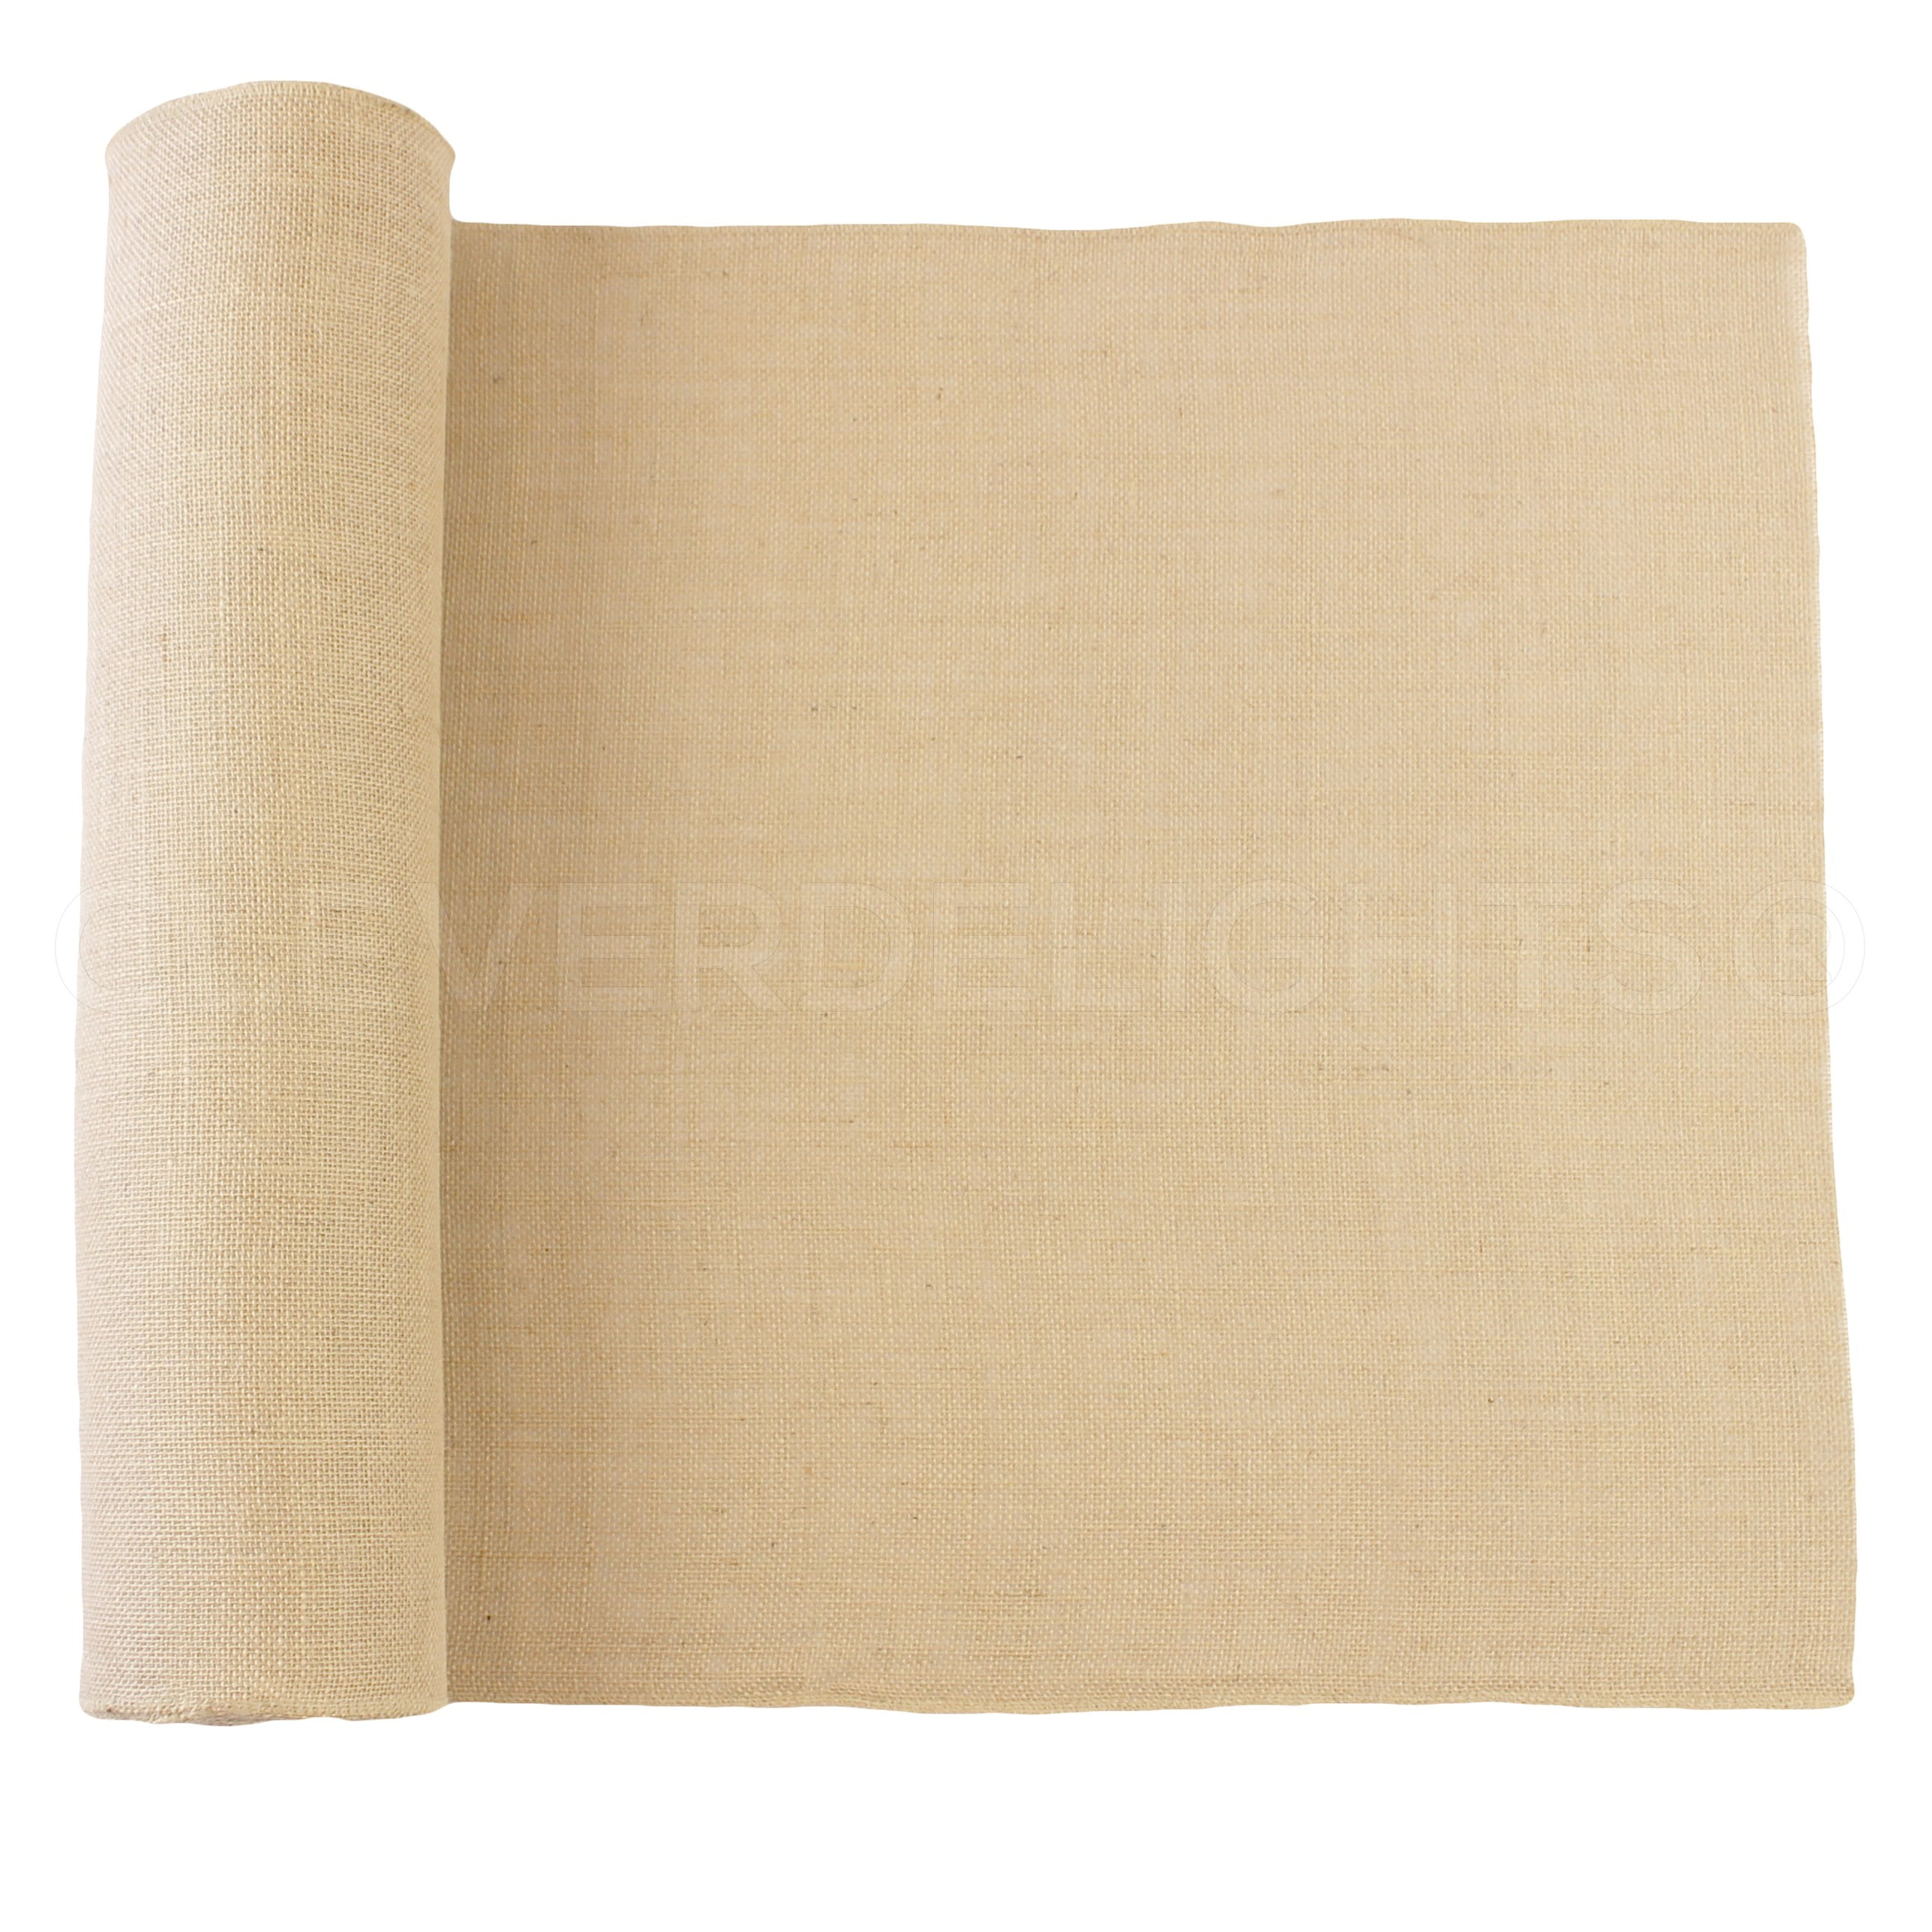 14 Wide Premium Natural Burlap Jute Roll Serged Fabric 10 yards/ 30 foot  Choose